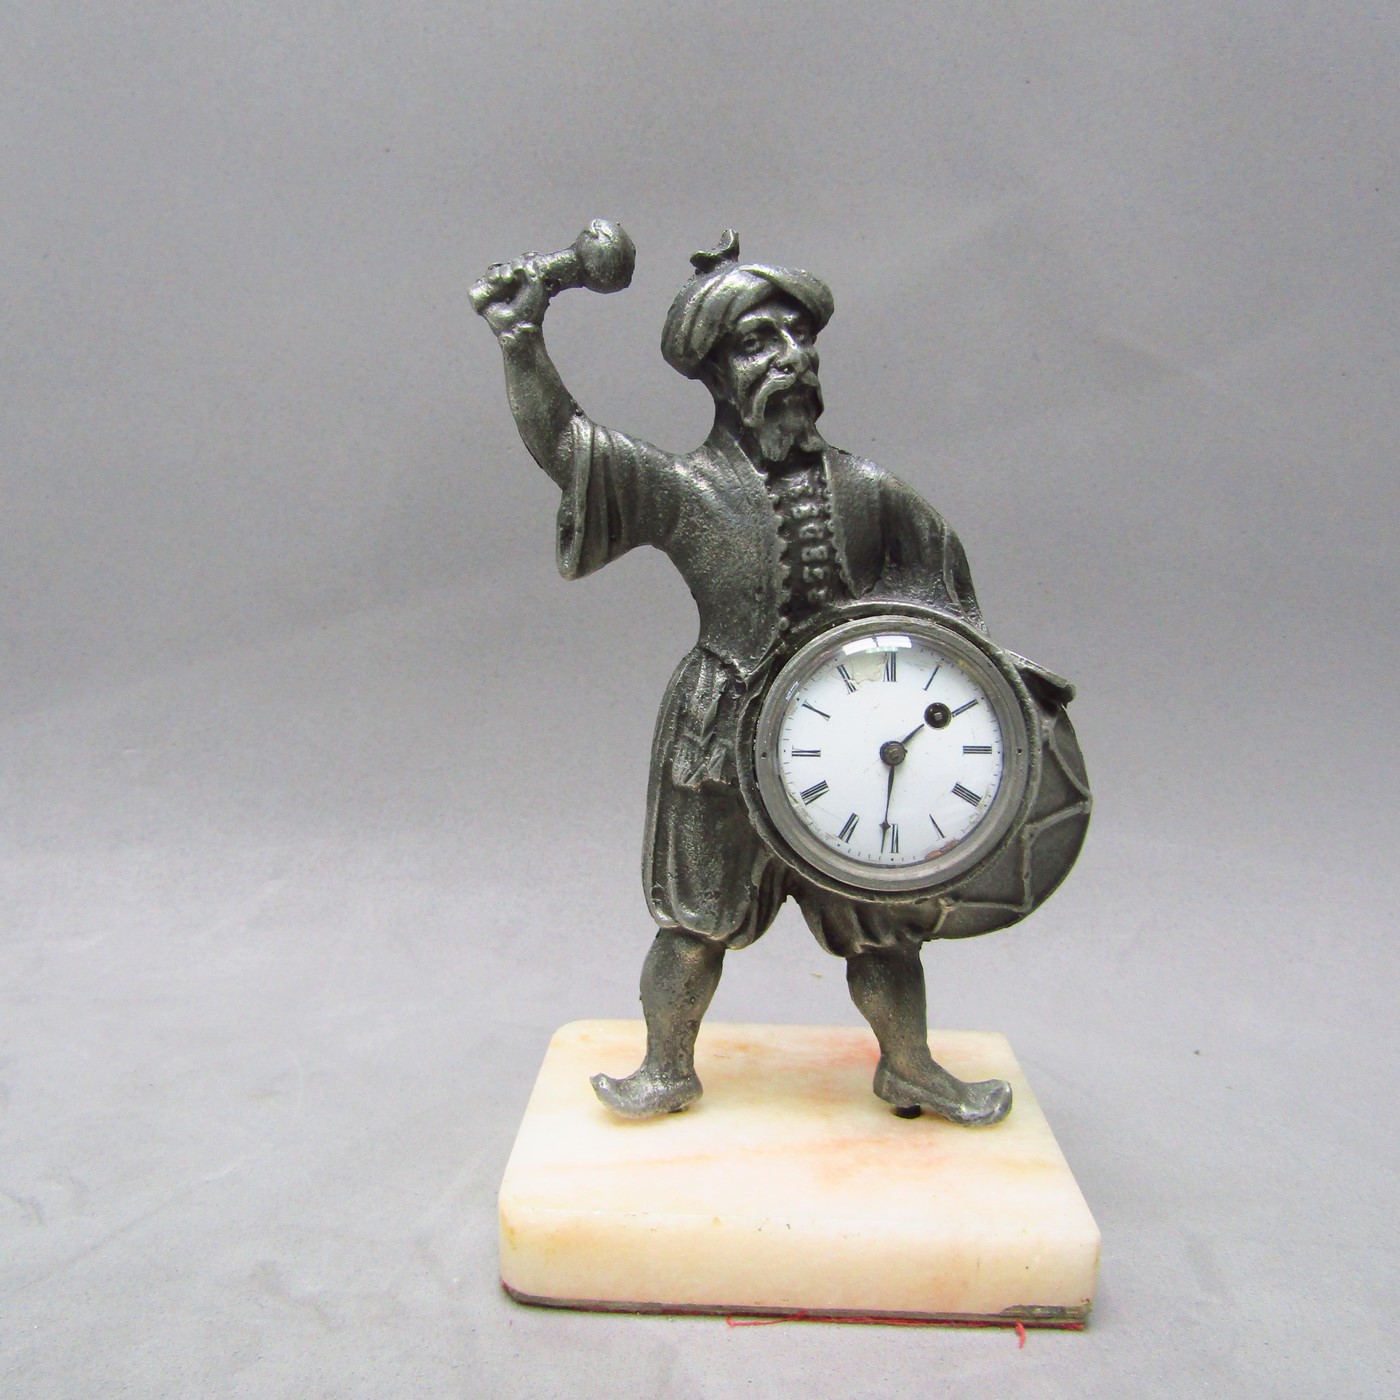 L.Epine. Reloj de Bolsillo Verge Fusee, integrado en escultura. París, ca. 1.780.